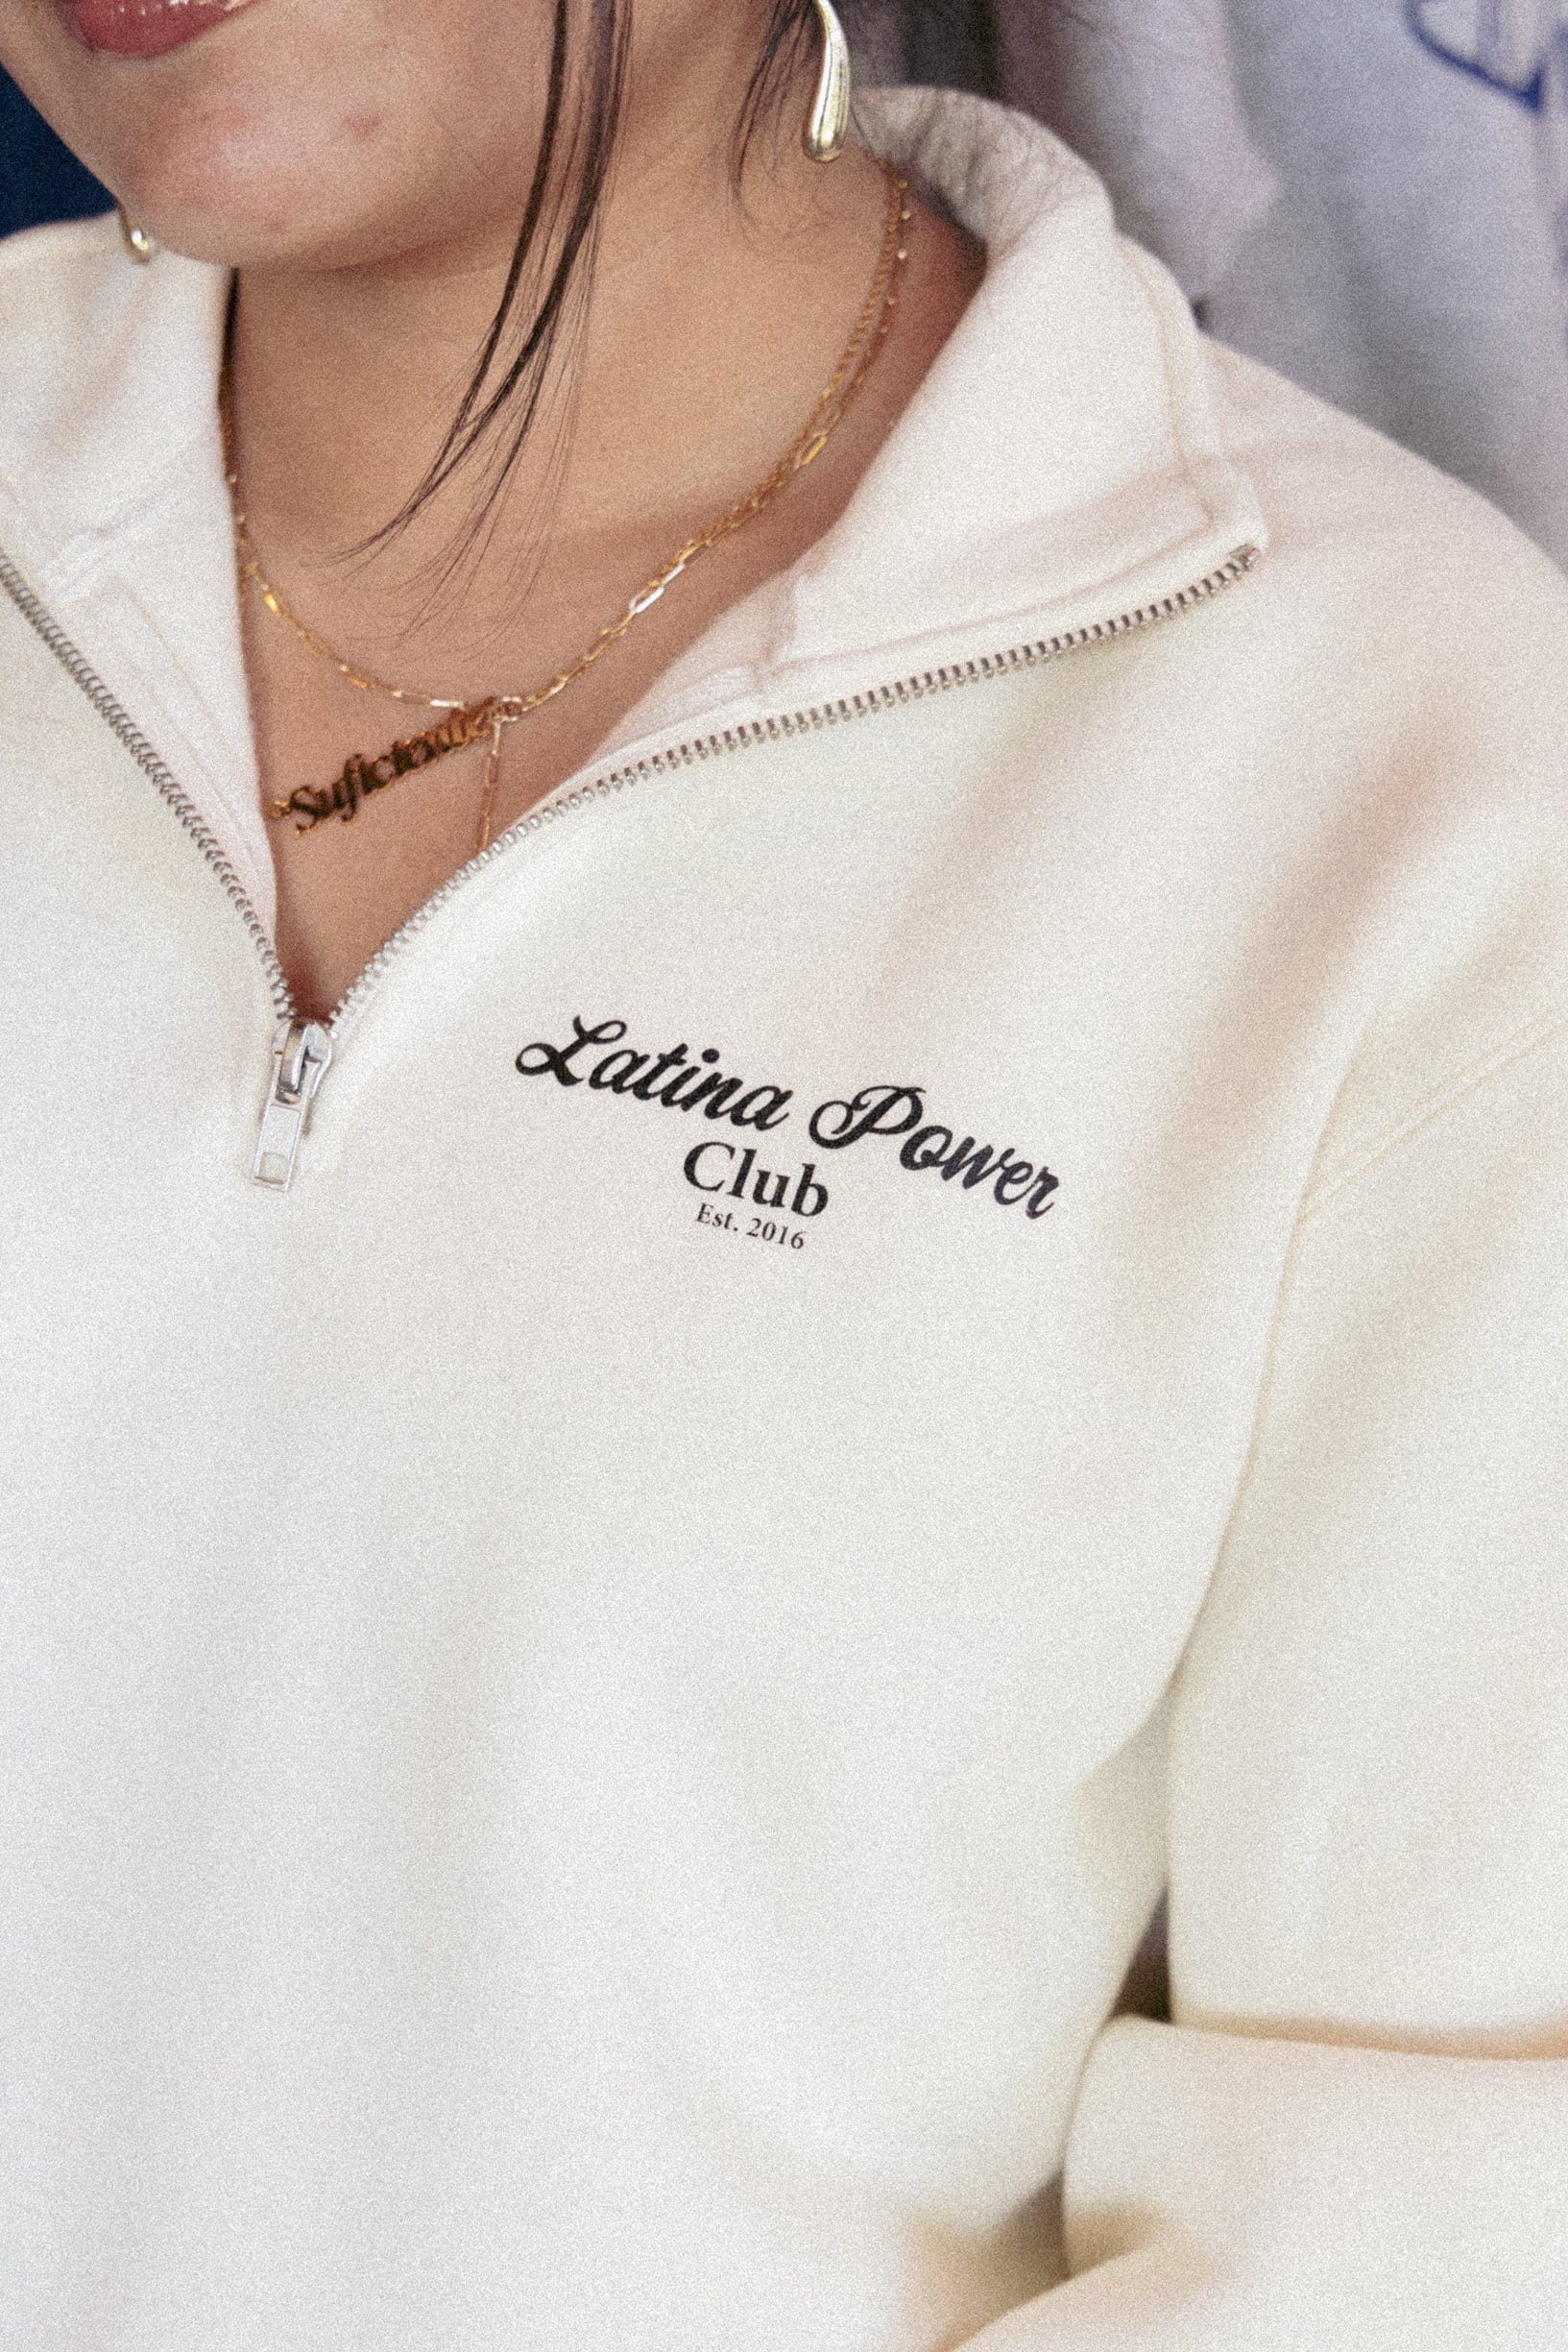 Latina Power Club Quarter Zip Sweatshirt - Unisex-Passform Geschenk Für Sie von JenZeanoDesigns